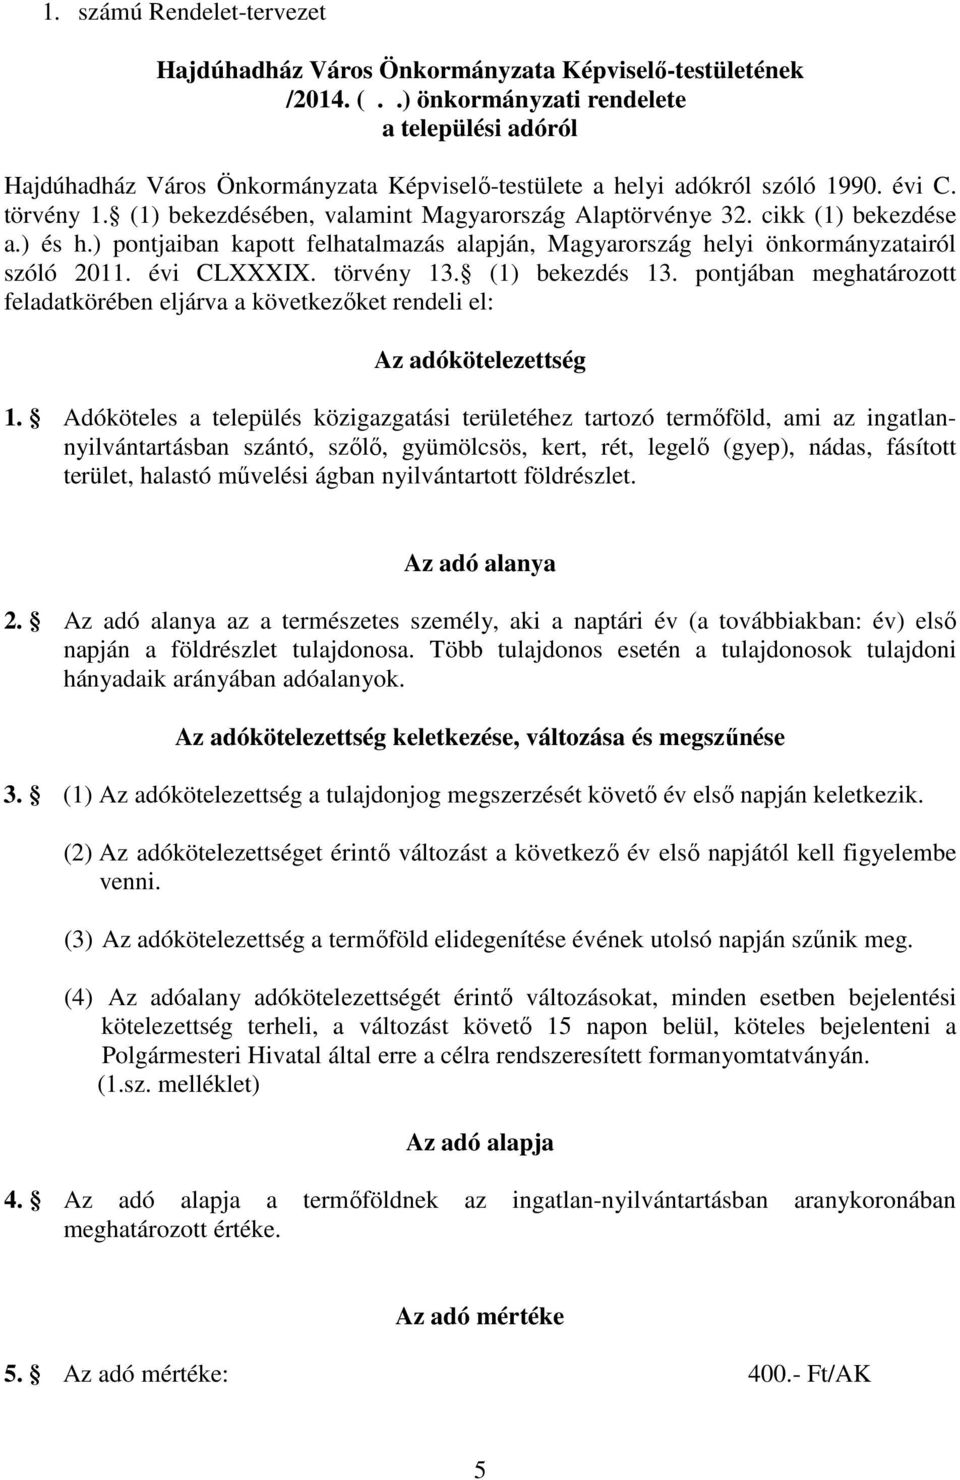 (1) bekezdésében, valamint Magyarország Alaptörvénye 32. cikk (1) bekezdése a.) és h.) pontjaiban kapott felhatalmazás alapján, Magyarország helyi önkormányzatairól szóló 2011. évi CLXXXIX.